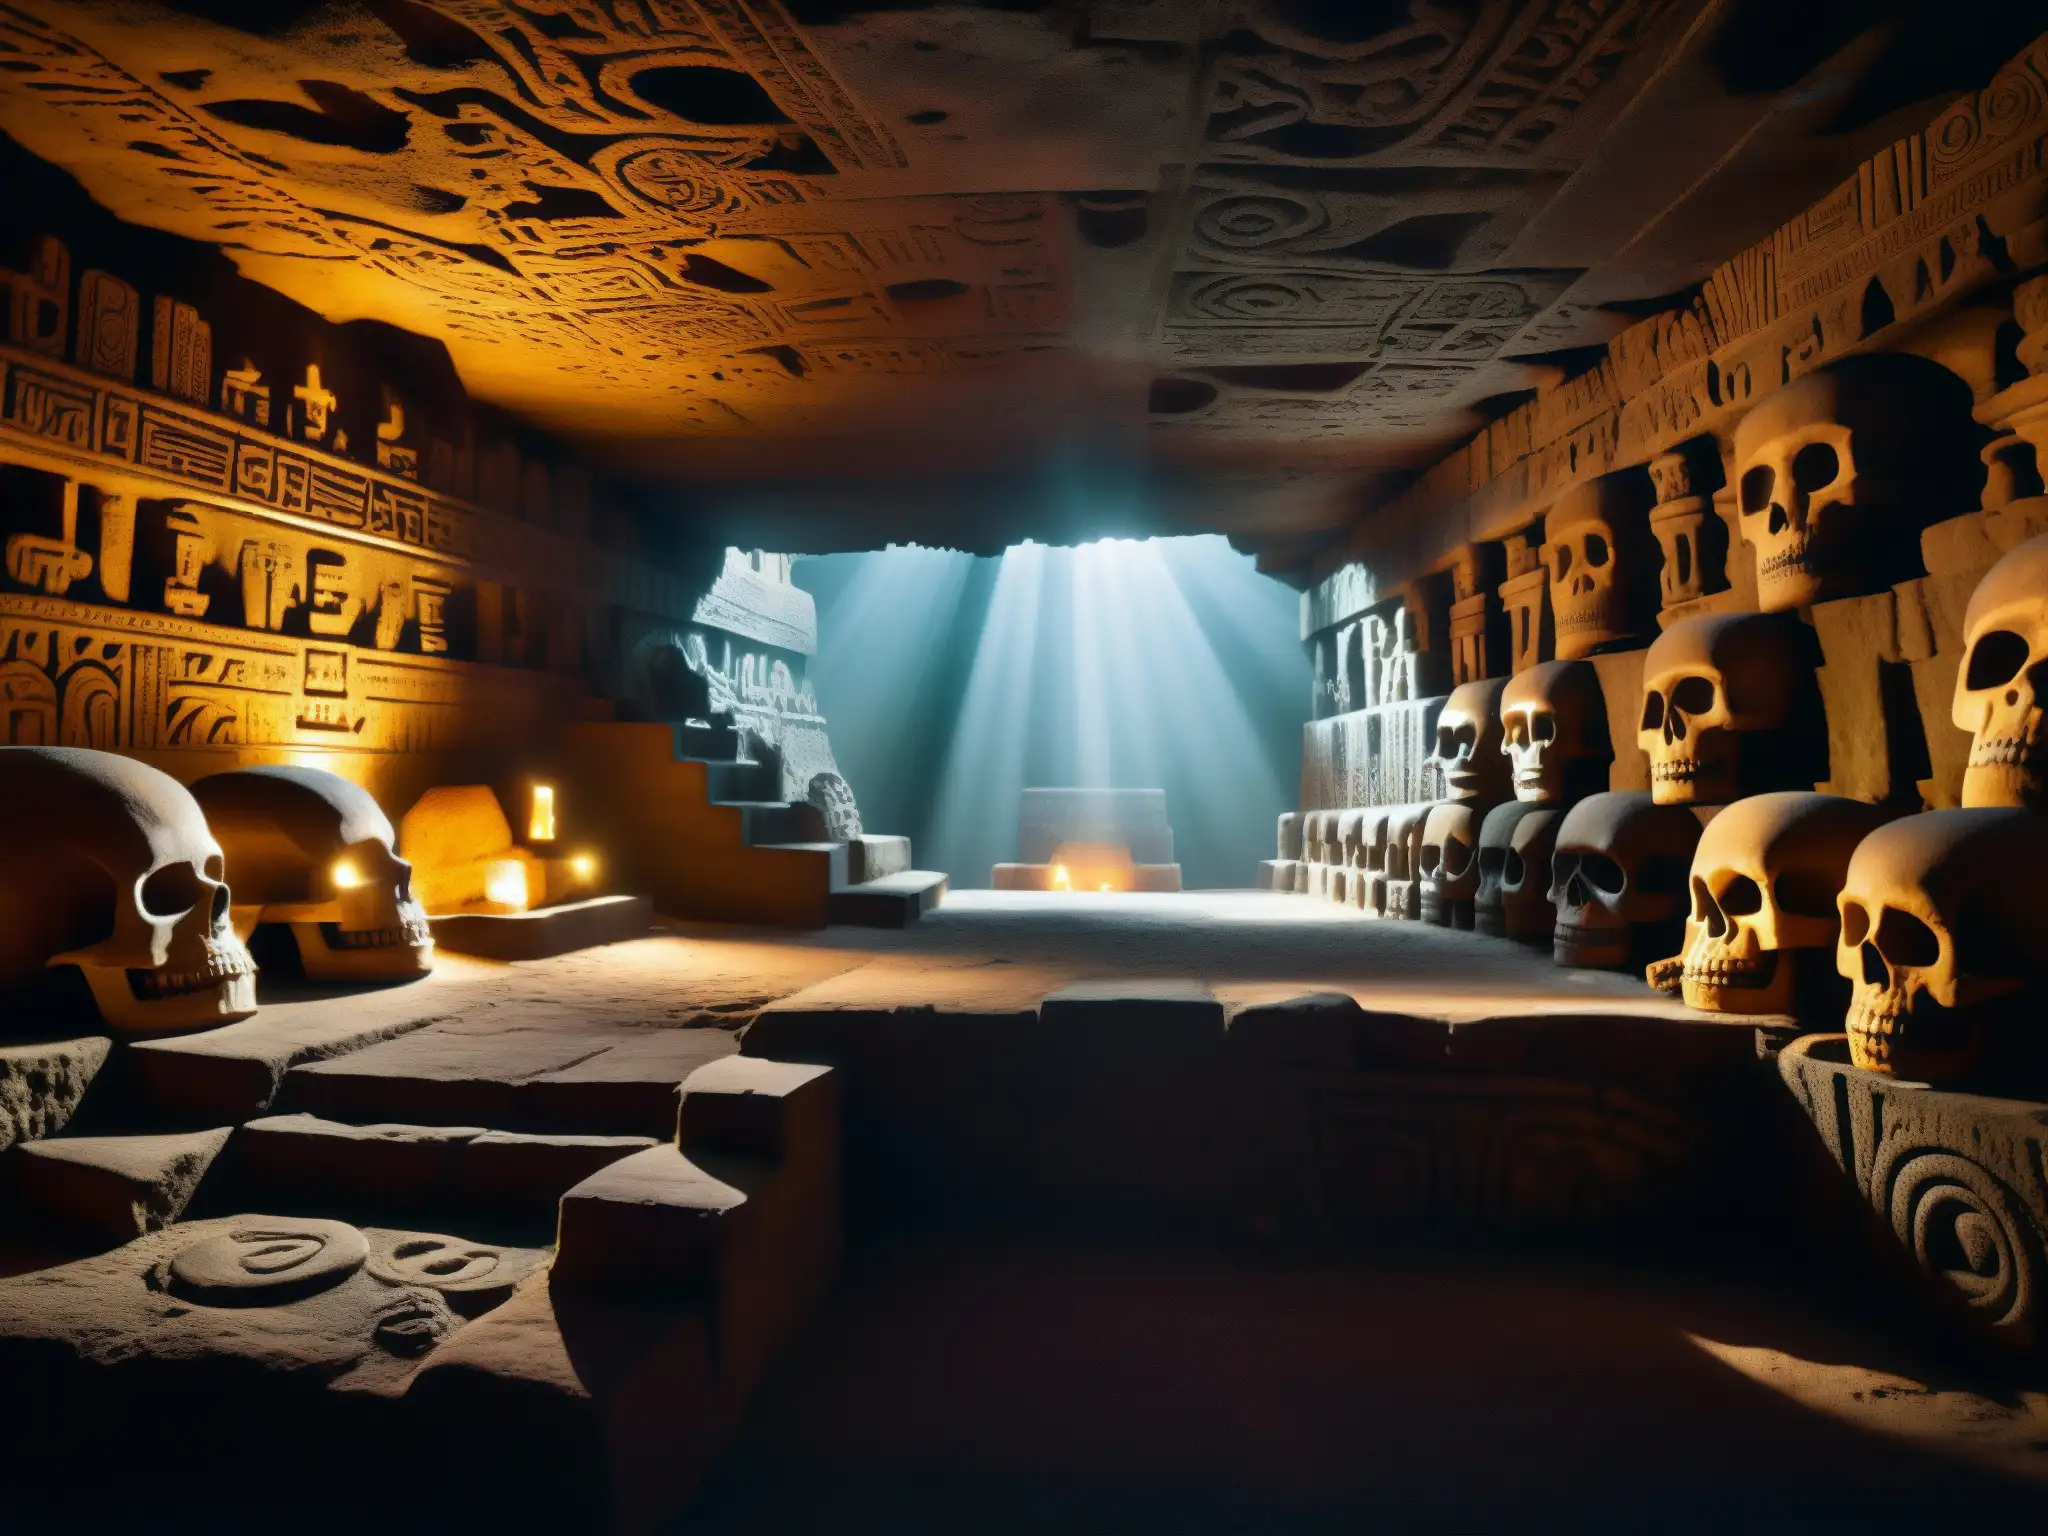 Una misteriosa imagen de Mictlán, el inframundo azteca, con caverna iluminada y detalladas figuras esqueléticas